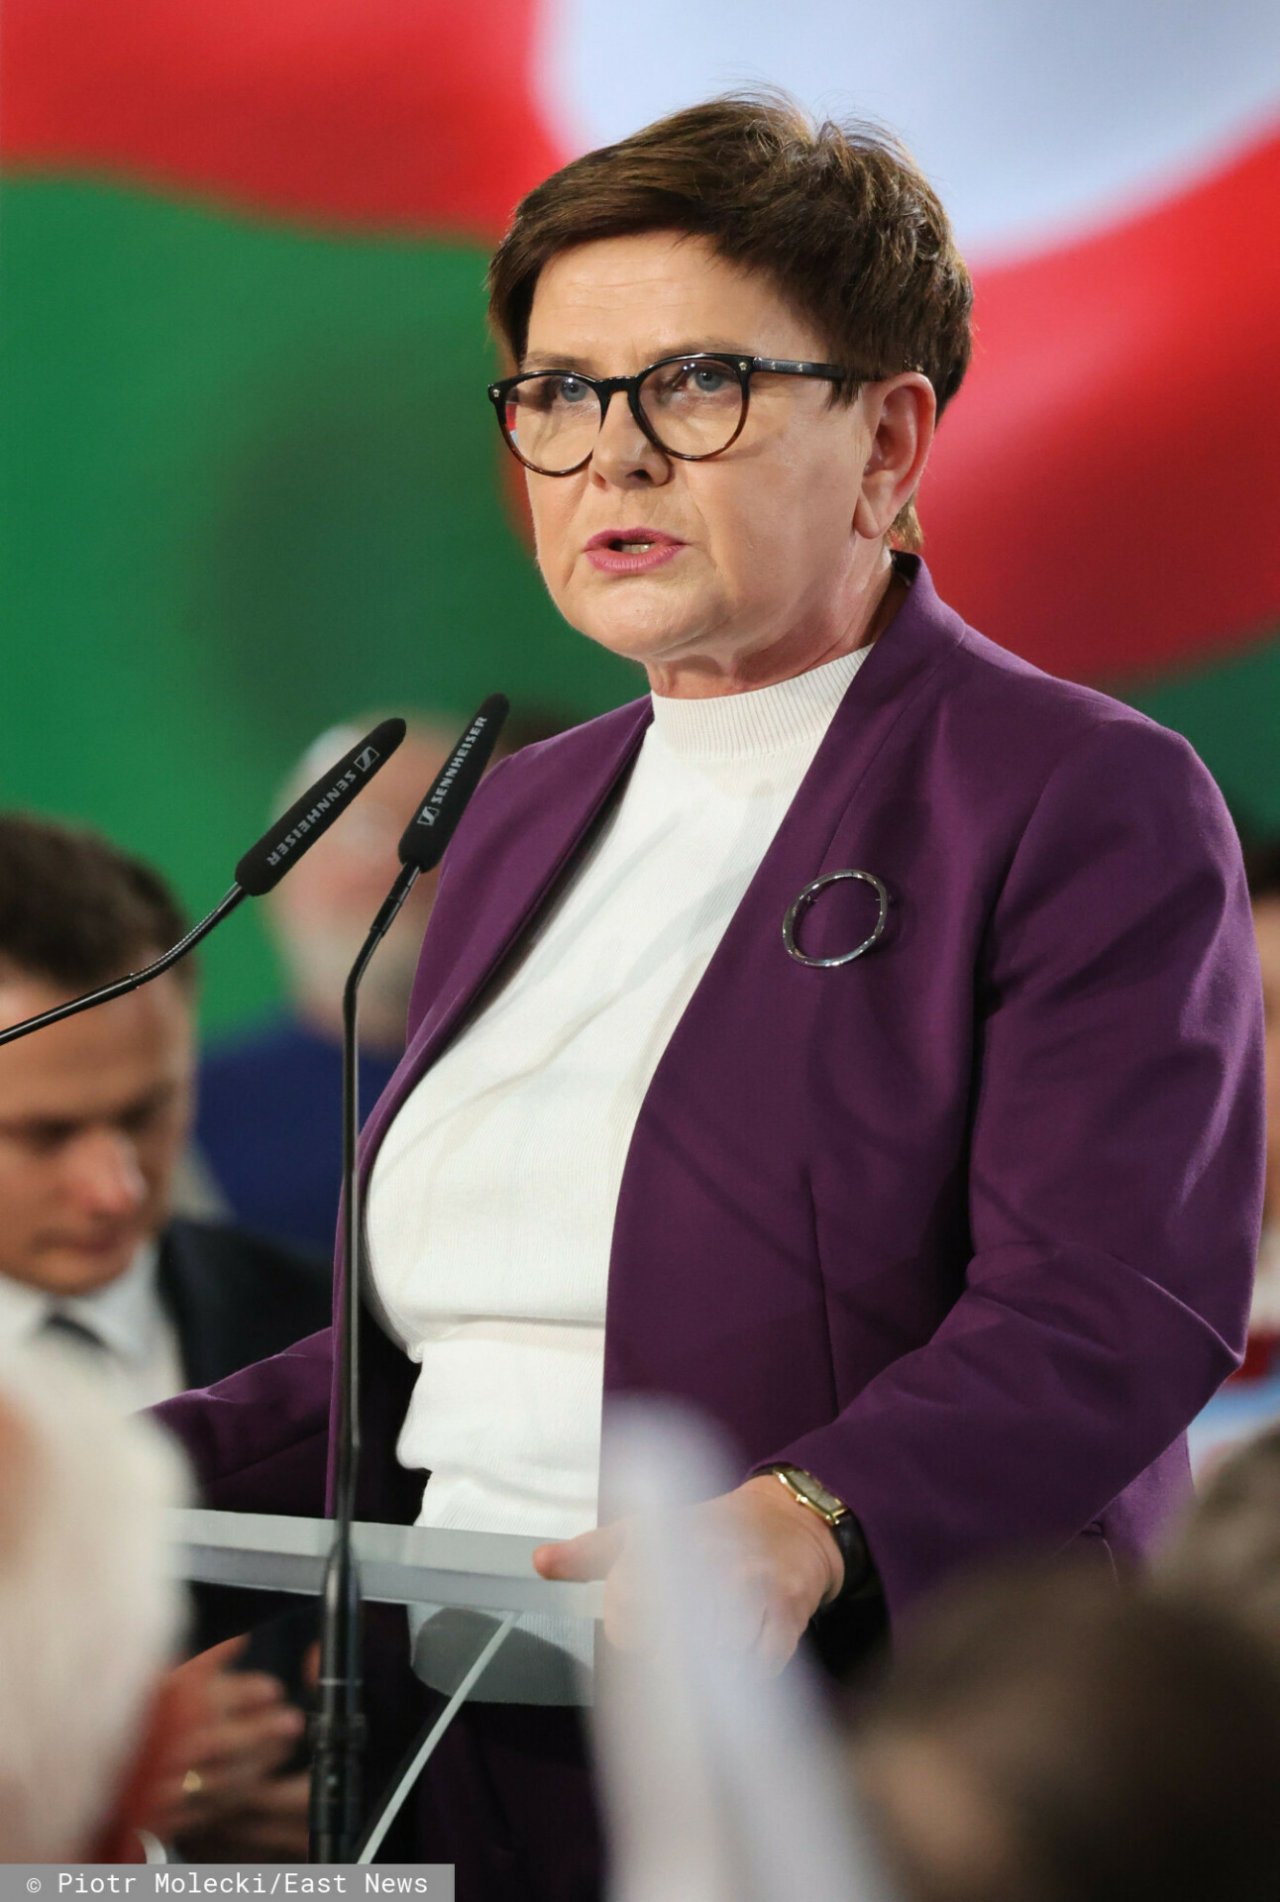 Beata Szydło w Białej bluzce, fioletowej marynarce z broszką przemawiająca do mikrofonu